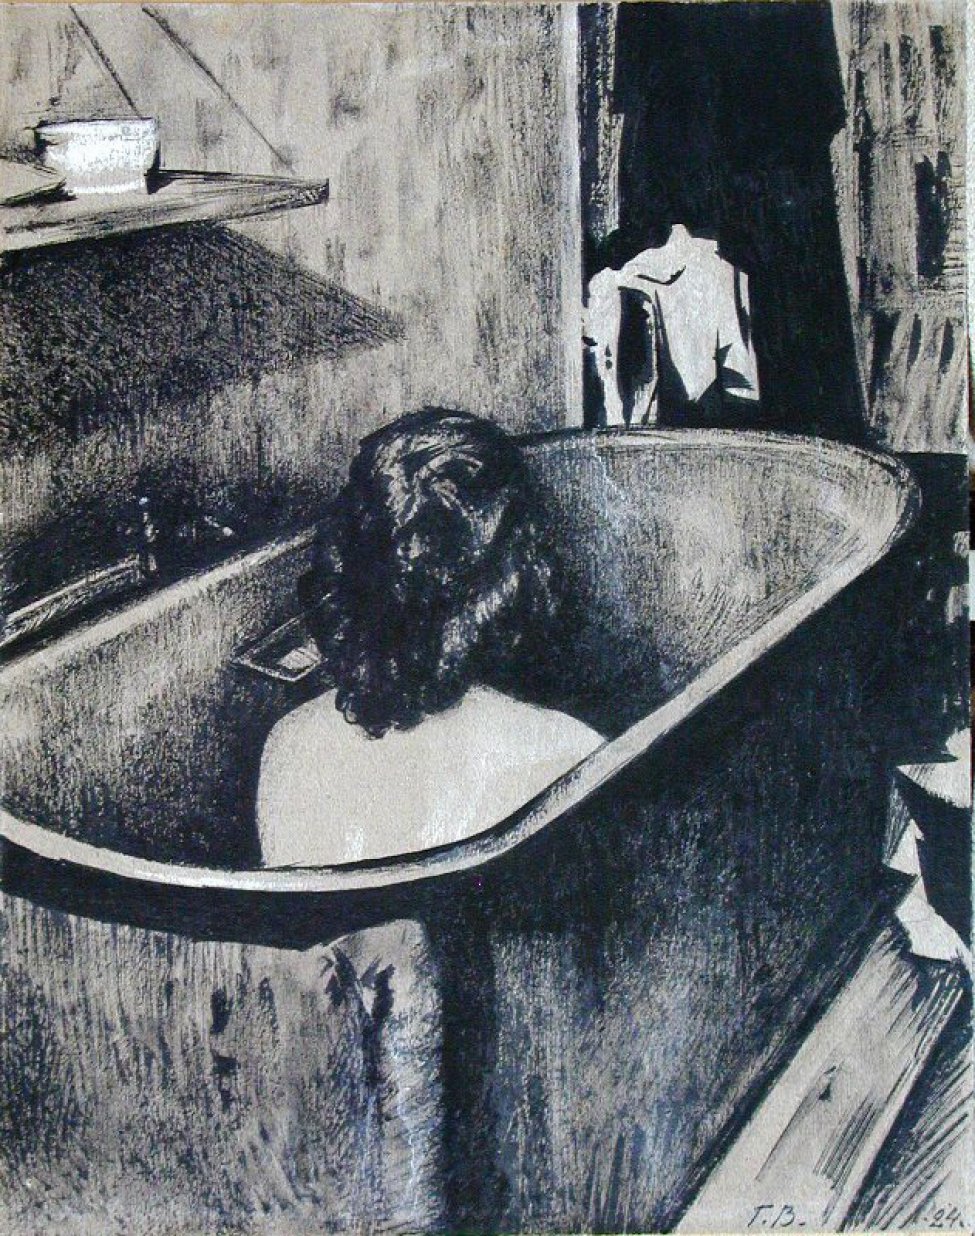 изображена часть ванной комнаты. В центре композиции на переднем плане - ванна, в которой сидит женщина, изображенная со спины.